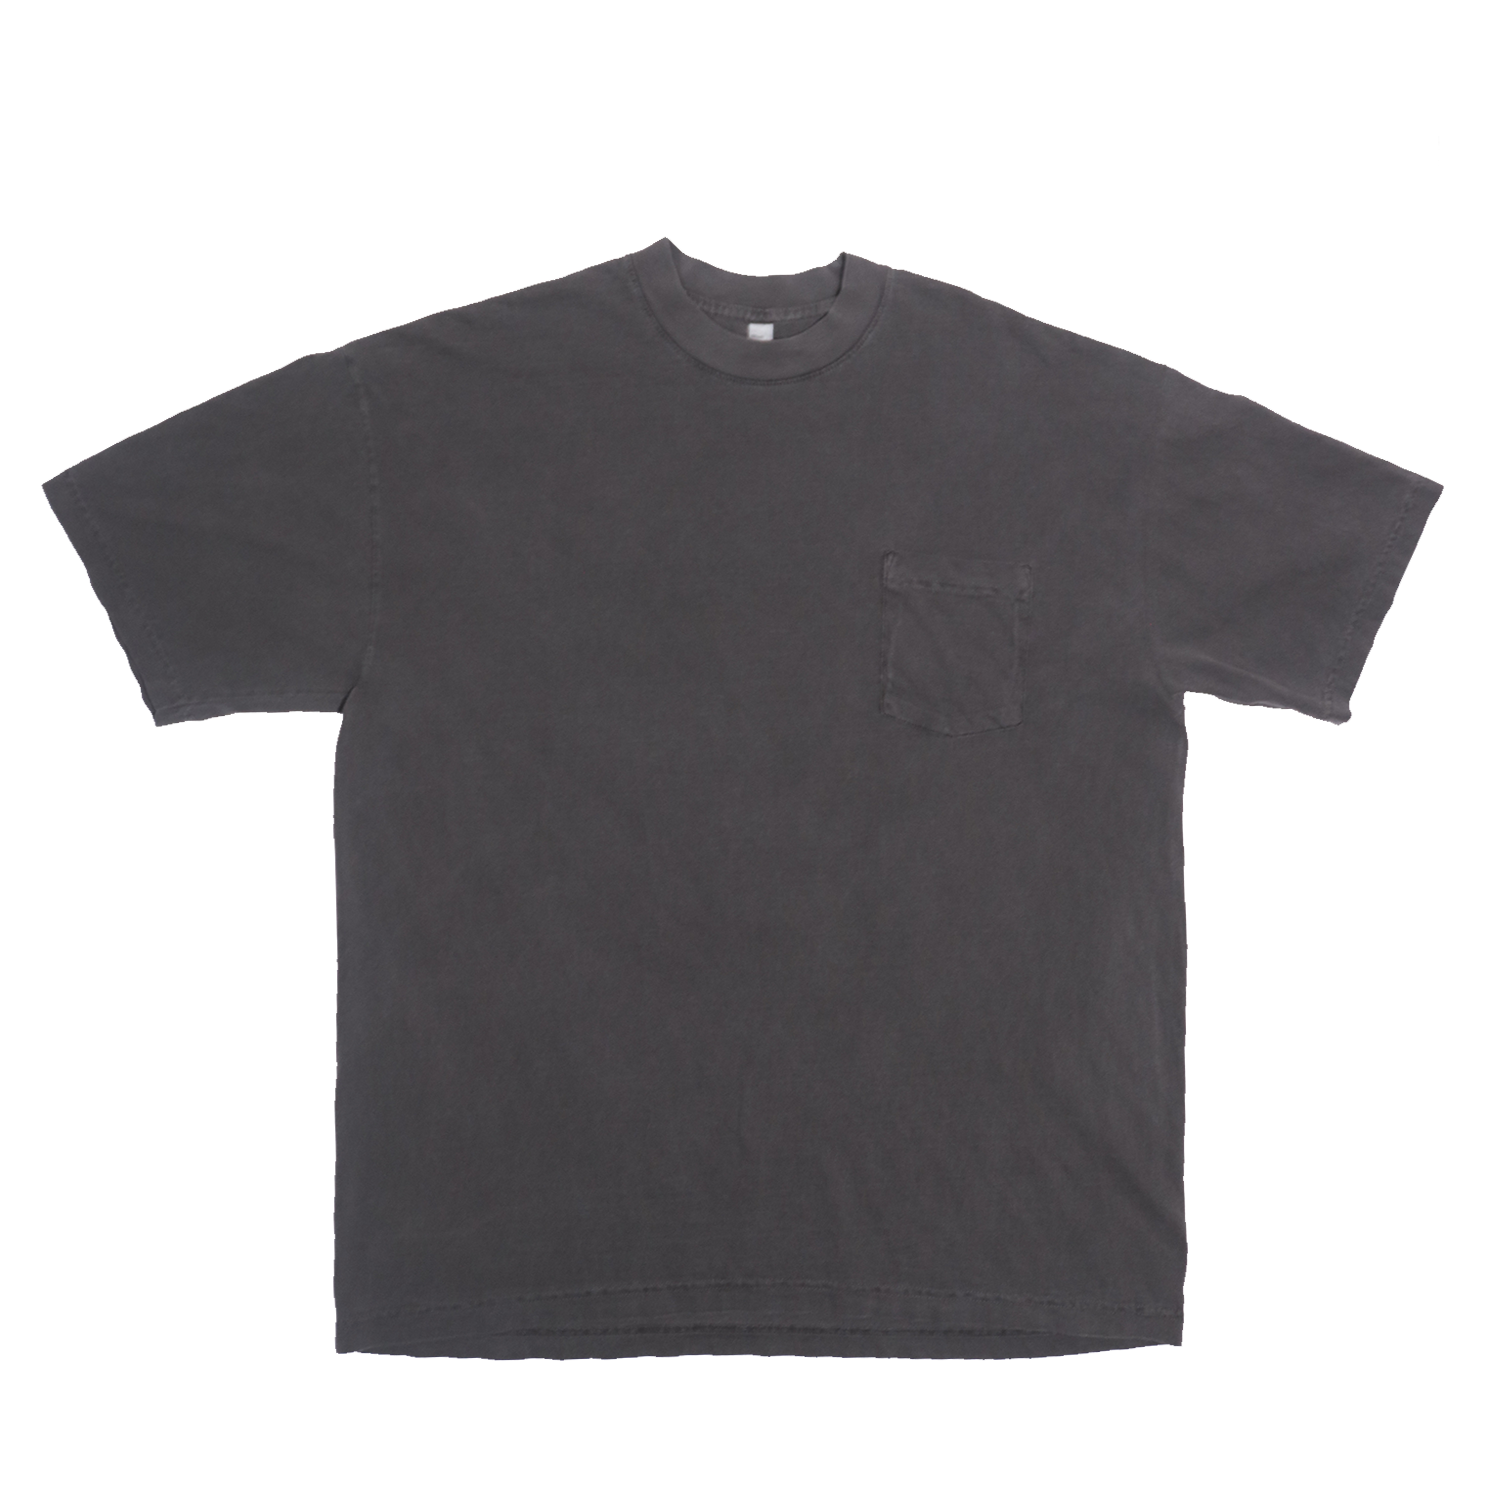 6.5oz La Apparel Garment Dye Crew Neck T-Shirt 2XL / Vintage Black